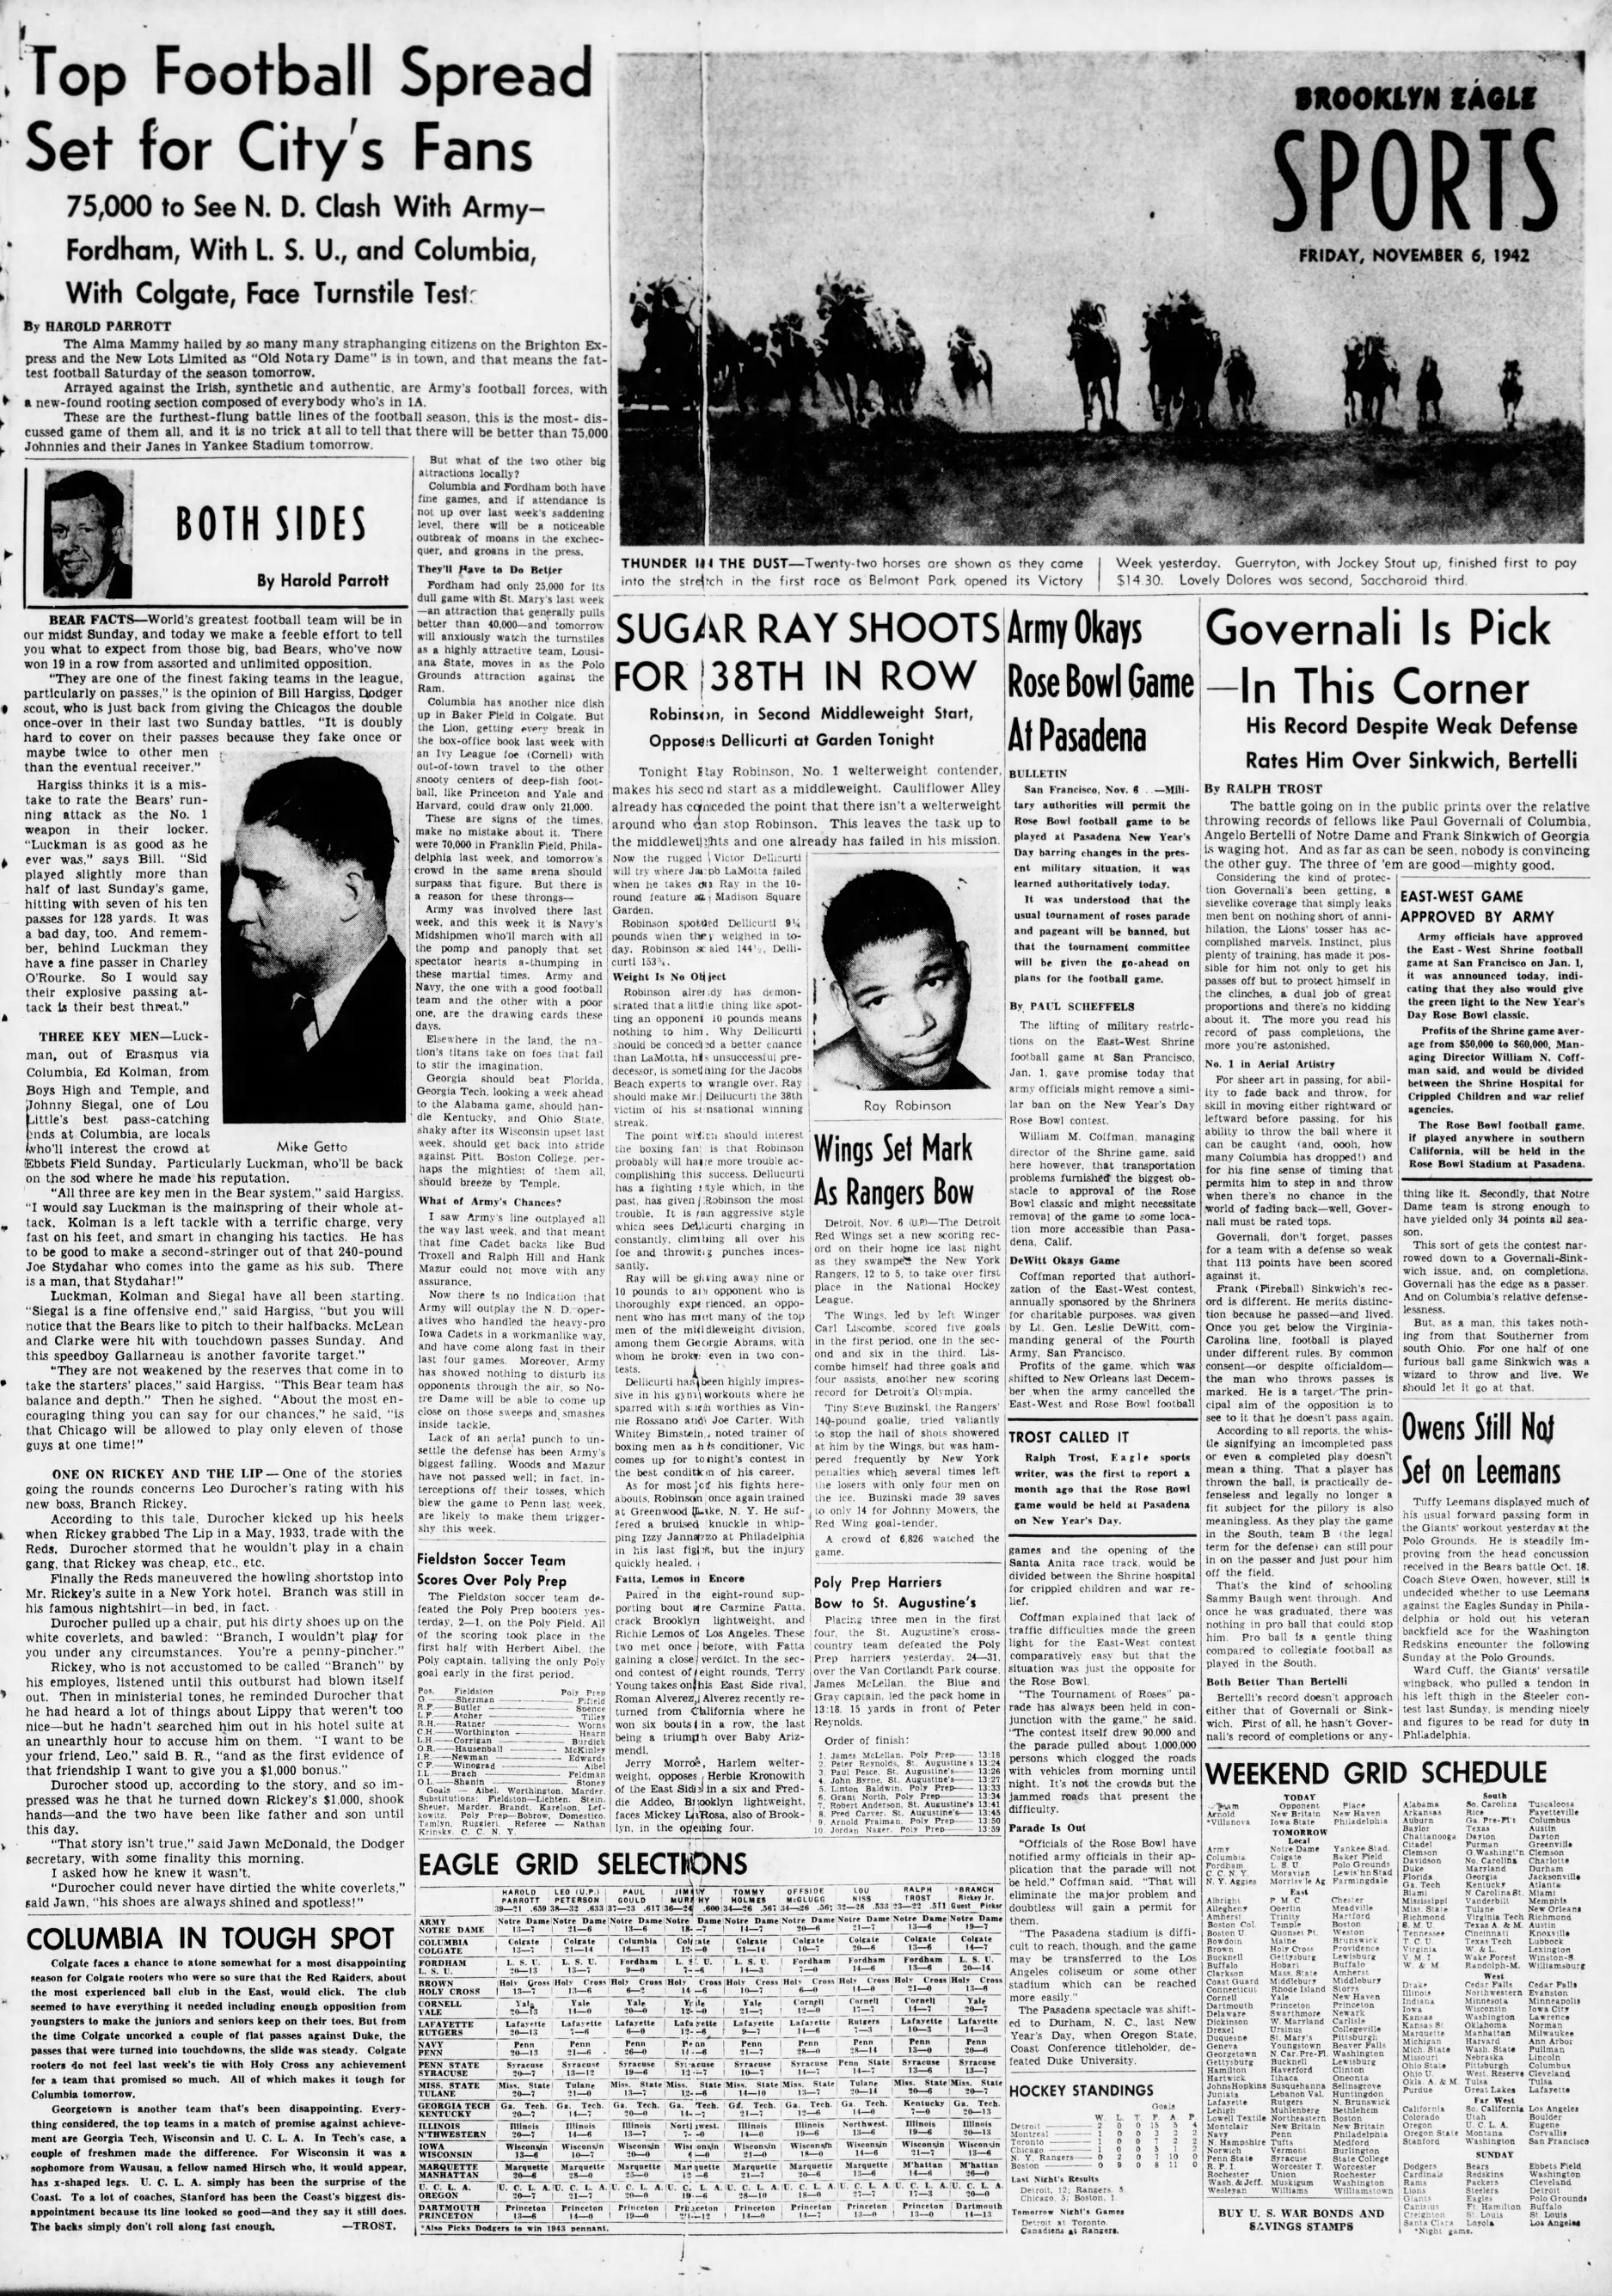 The_Brooklyn_Daily_Eagle_Fri__Nov_6__1942_(4).jpg